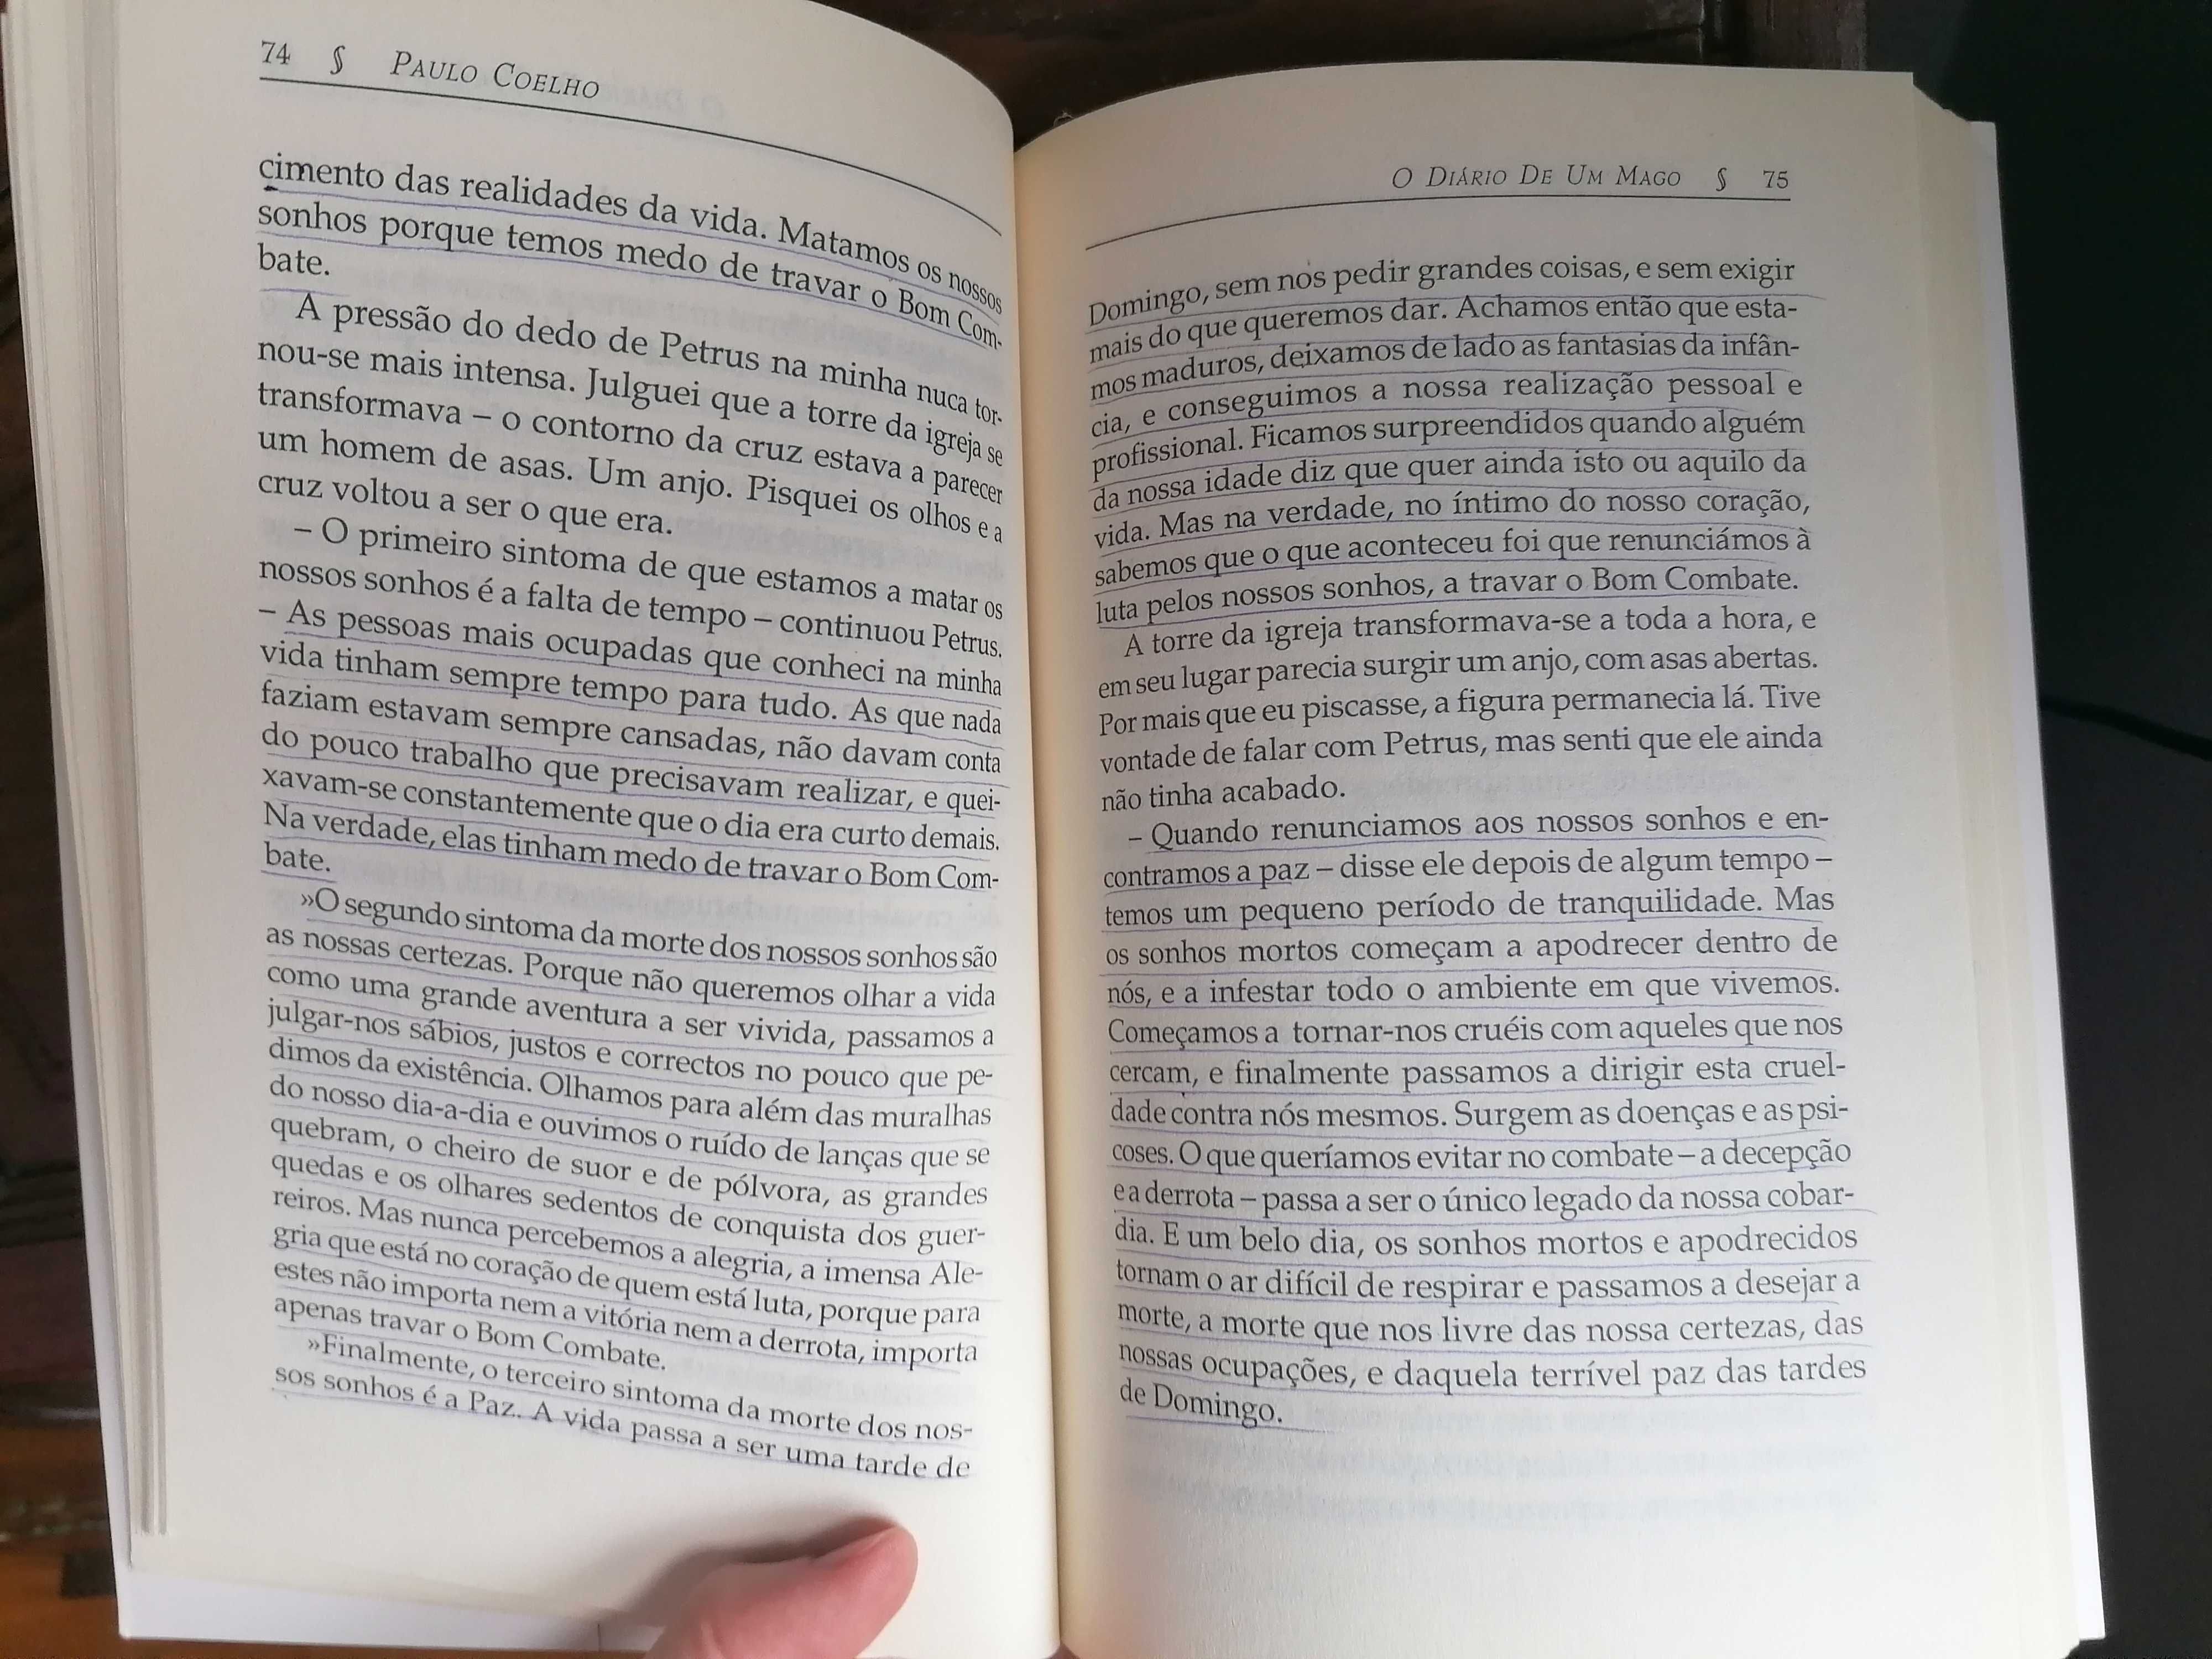 Livro "O diário de um mago" Paulo Coelho